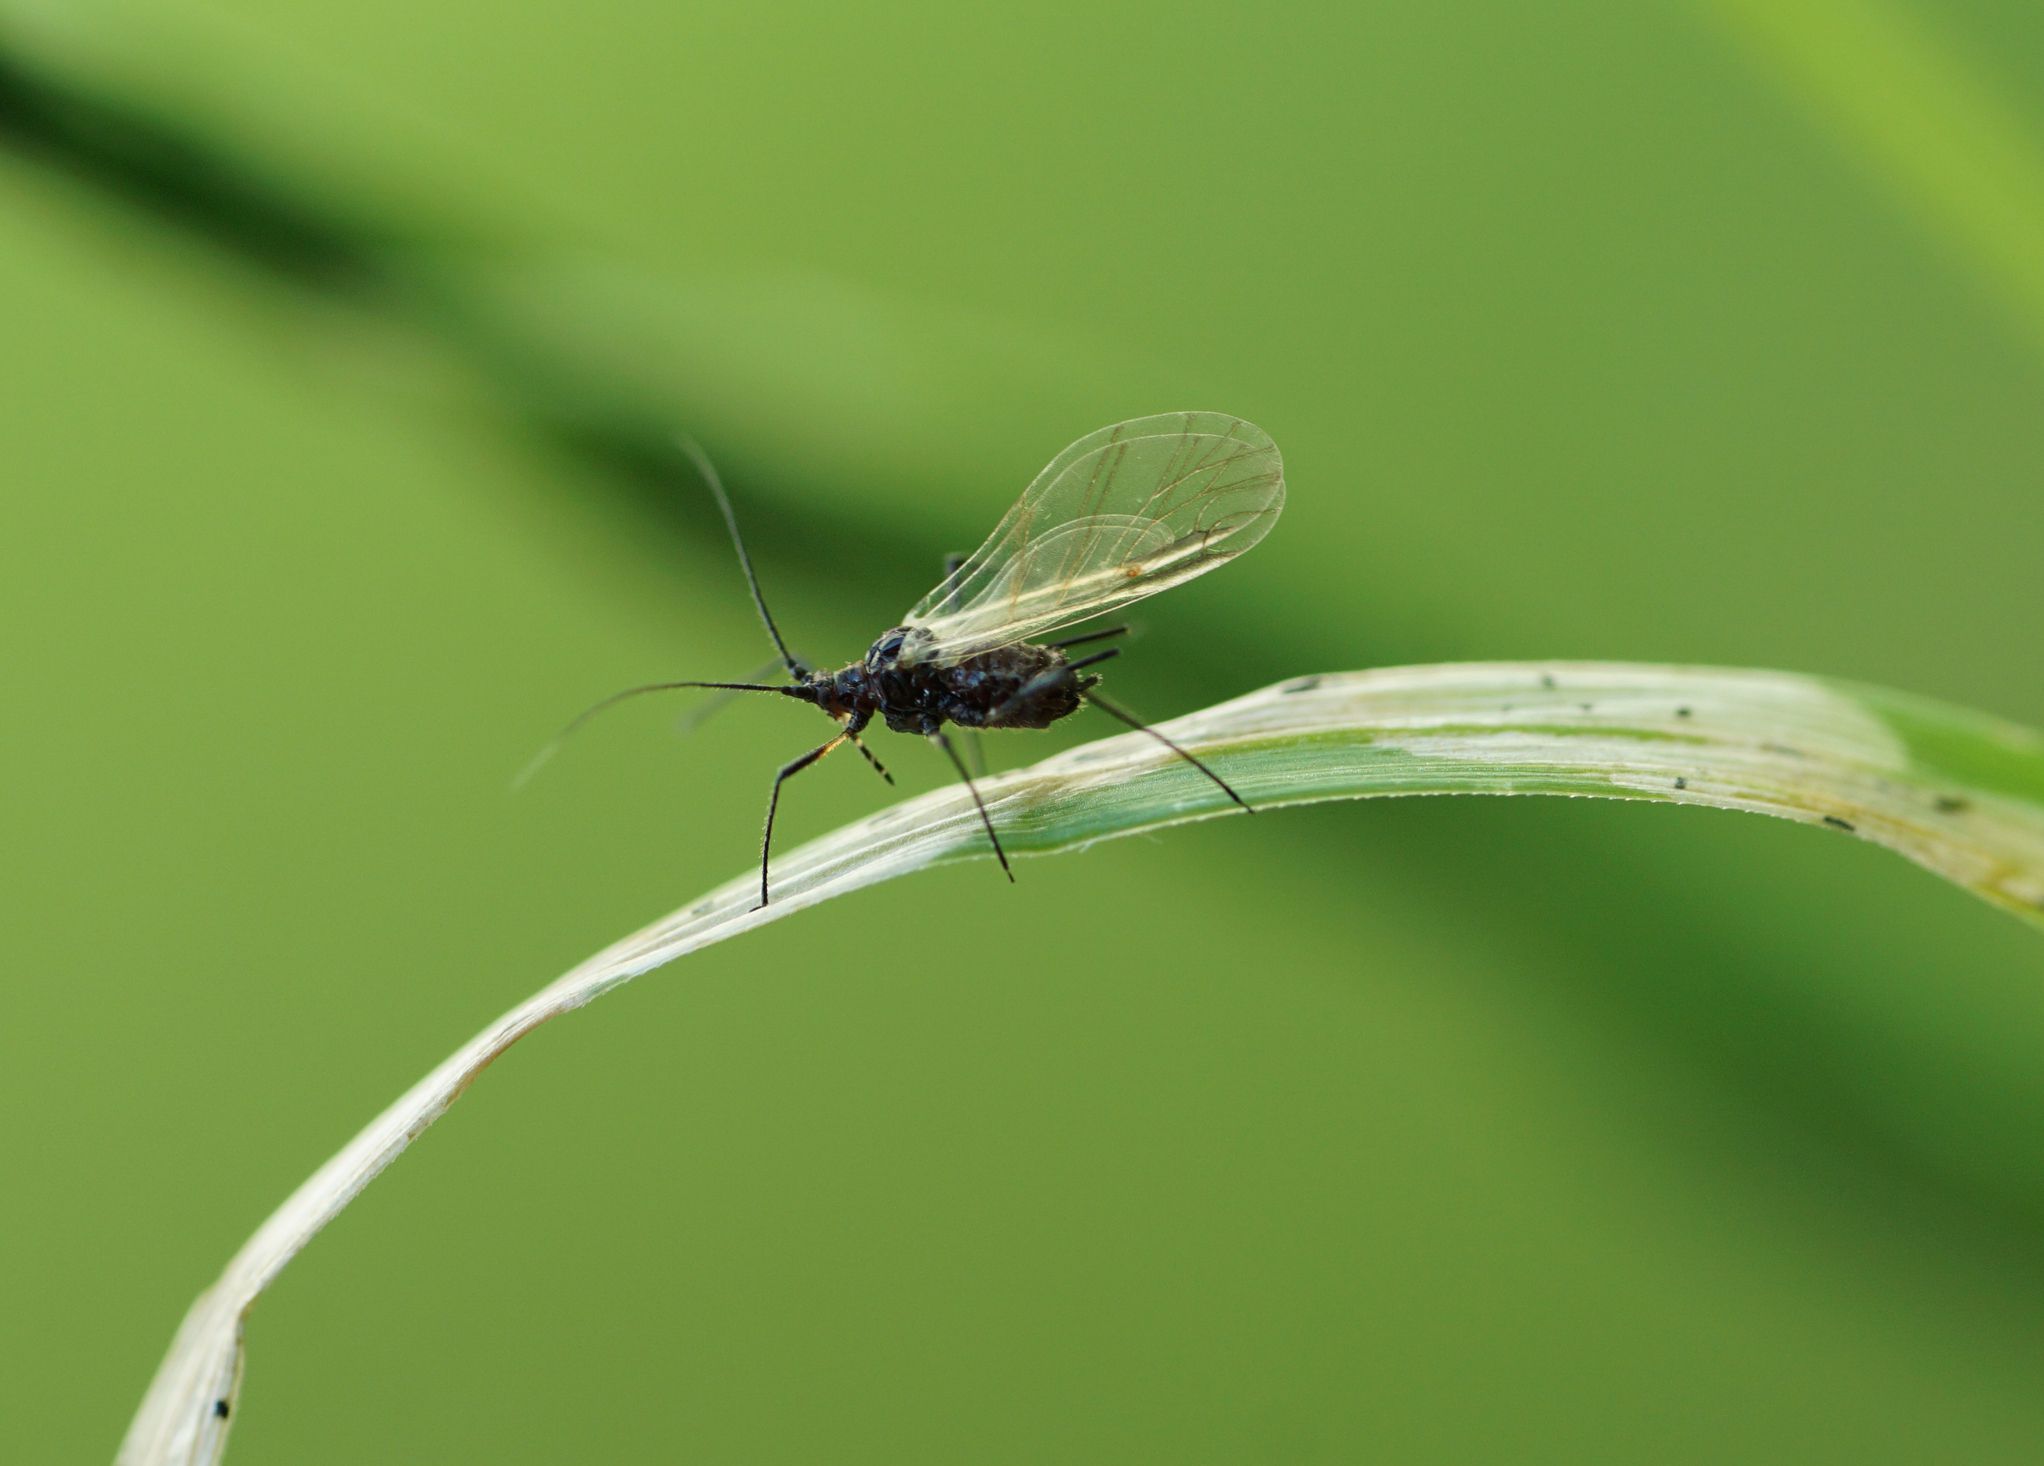 Una mosca del mosquito en una brizna de hierba